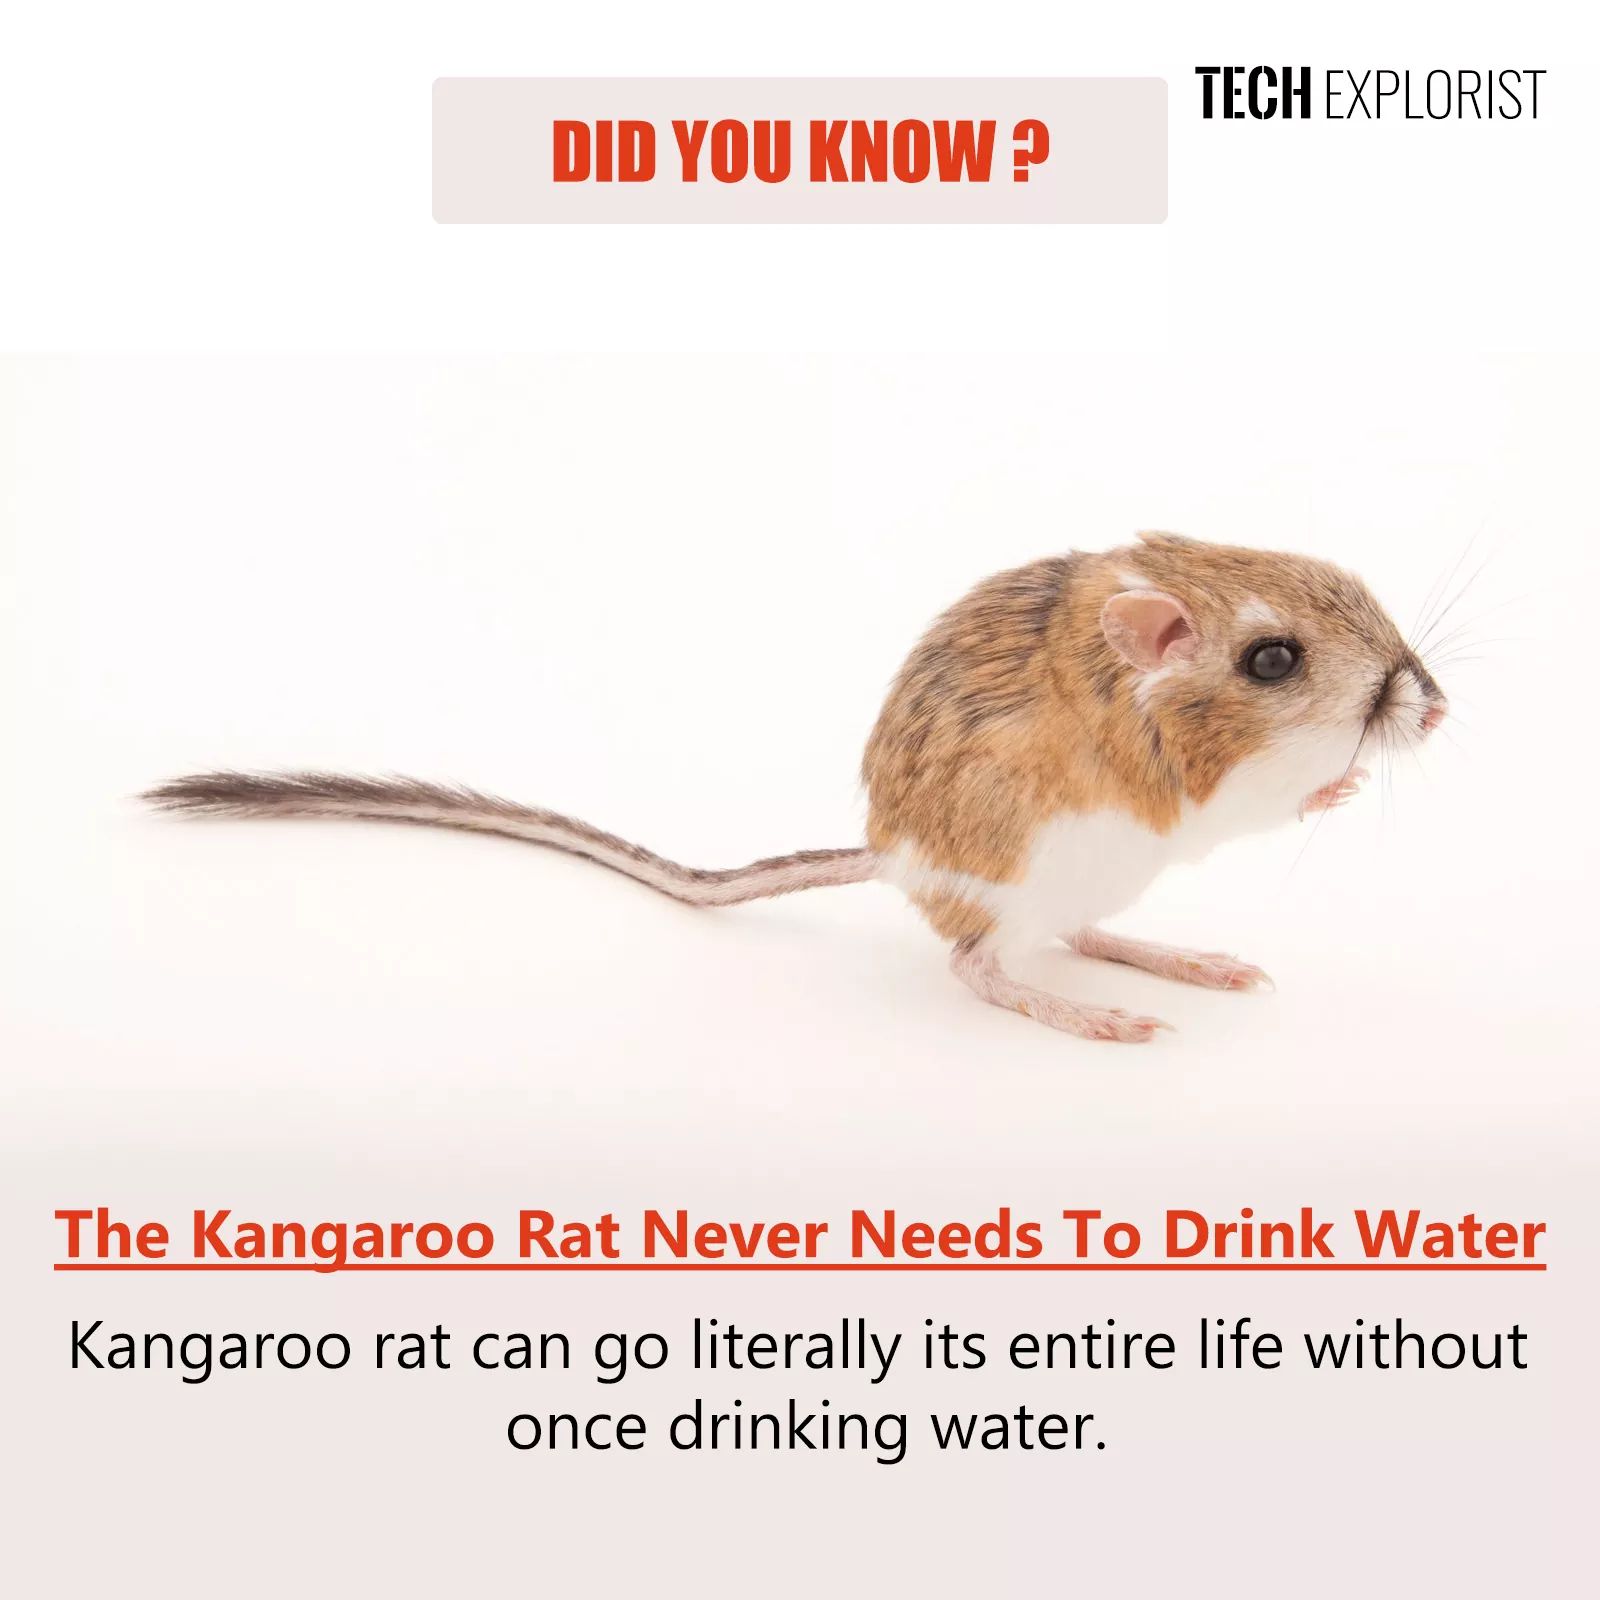 Is kangaroo rat never drink water?